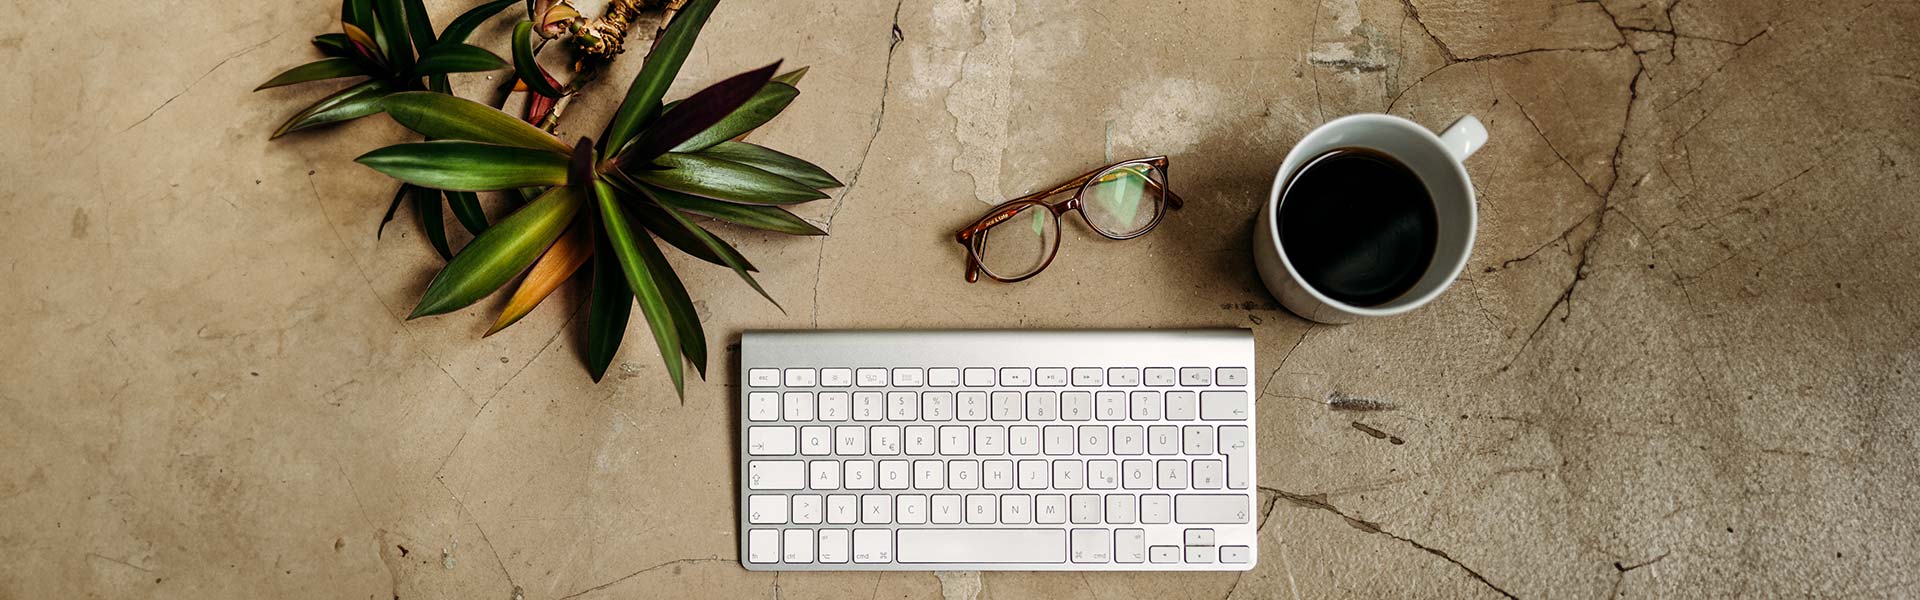 Schreibstisch mit Computer Tastatur, Brille und Kaffee